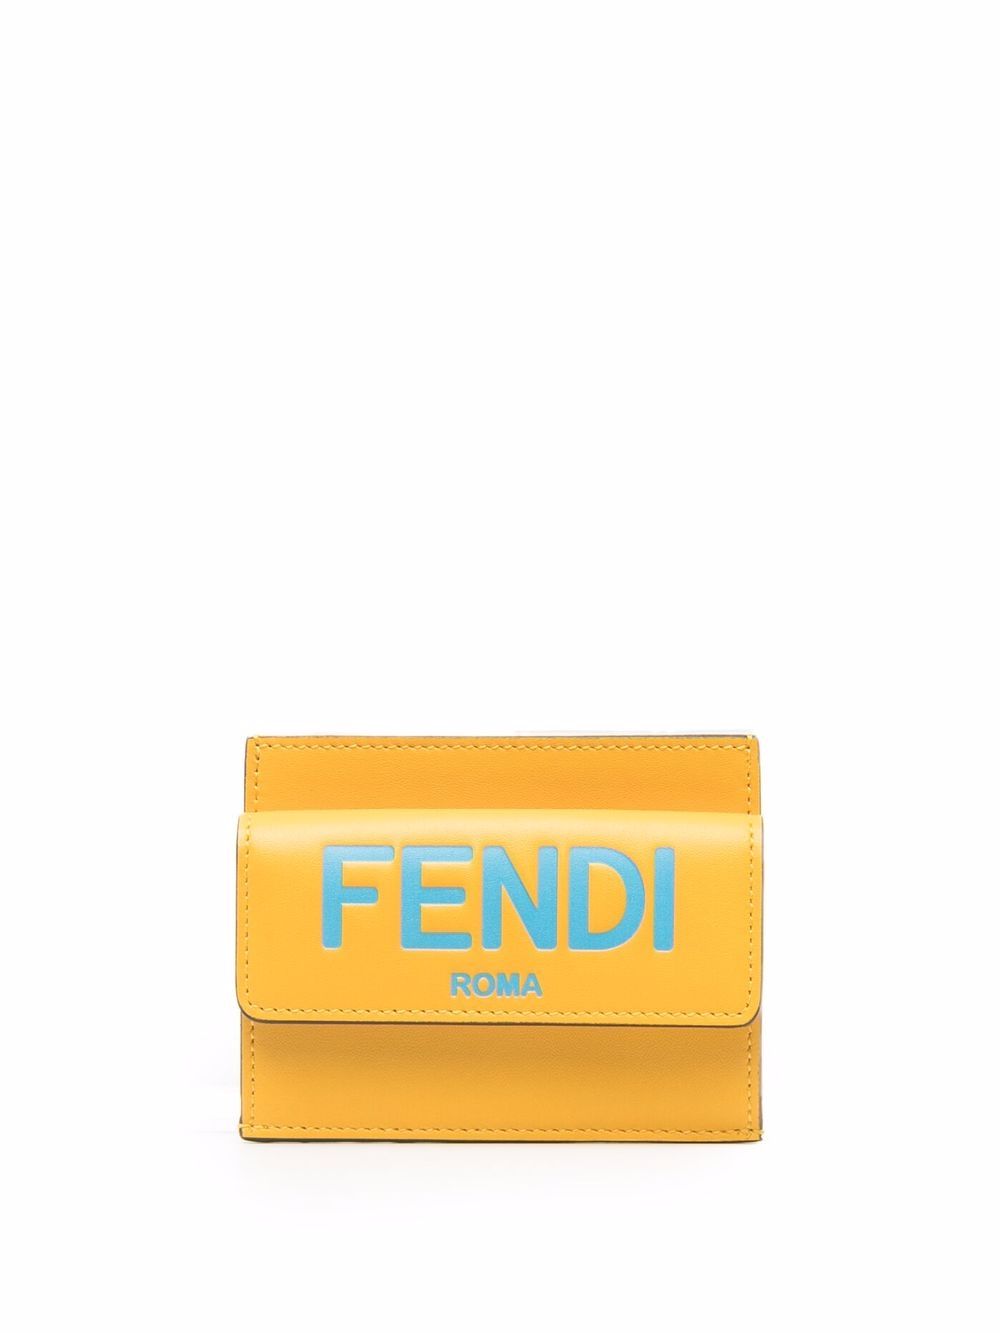 фото Fendi кошелек с логотипом